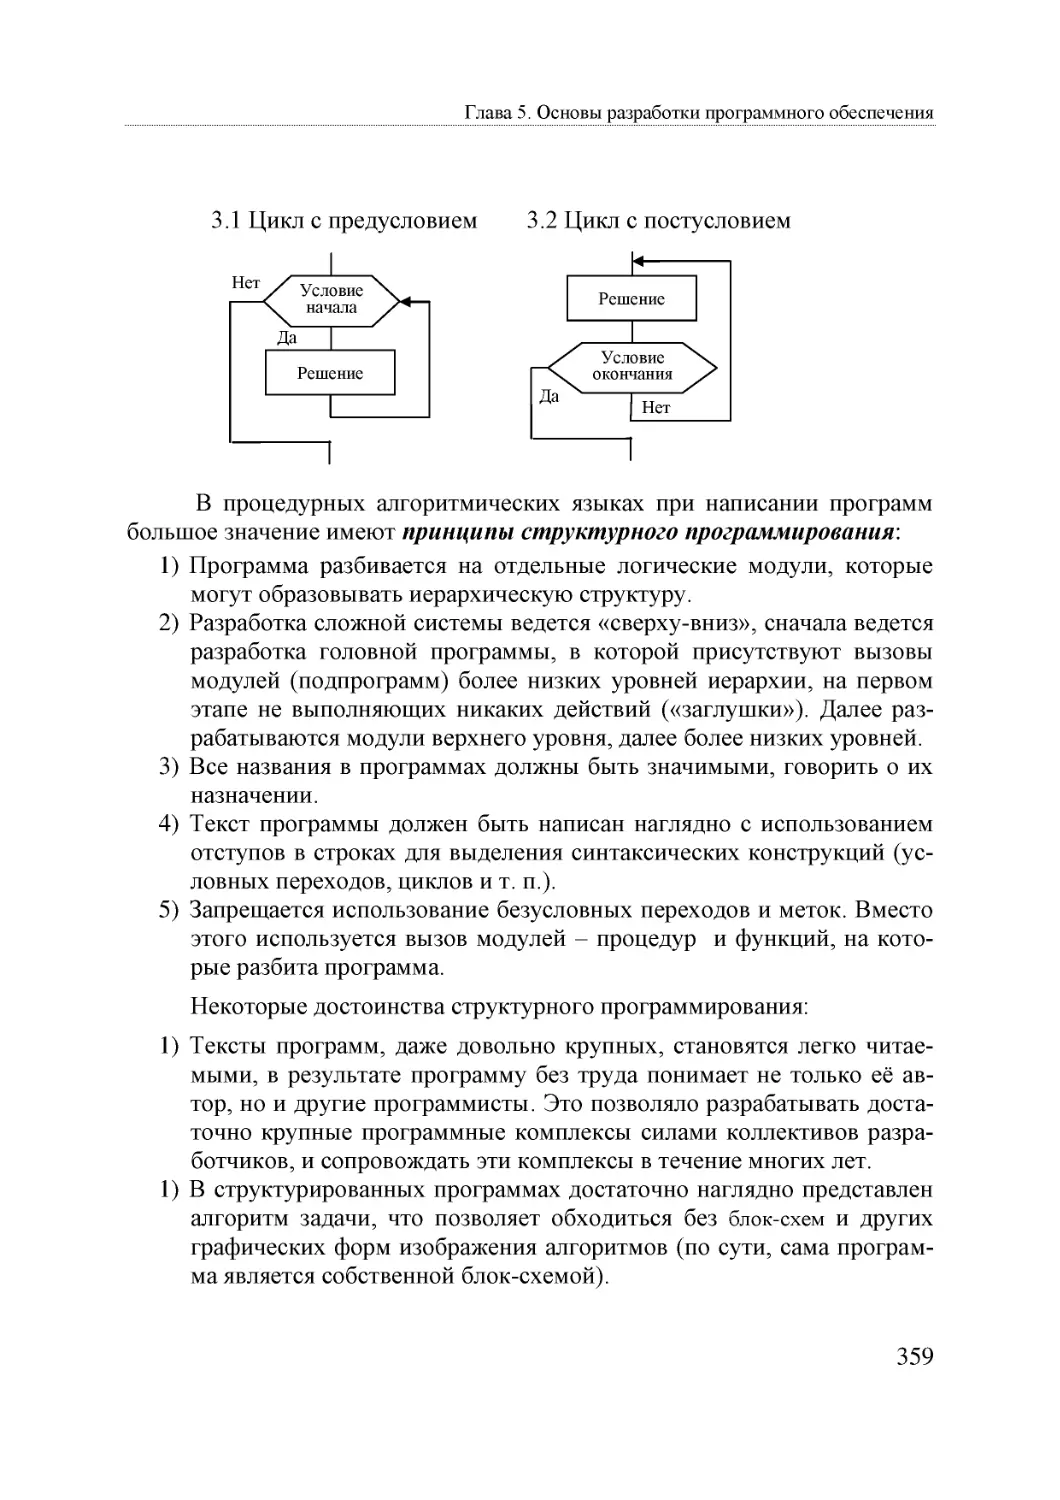 Informatika_Uchebnik_dlya_vuzov_2010 359